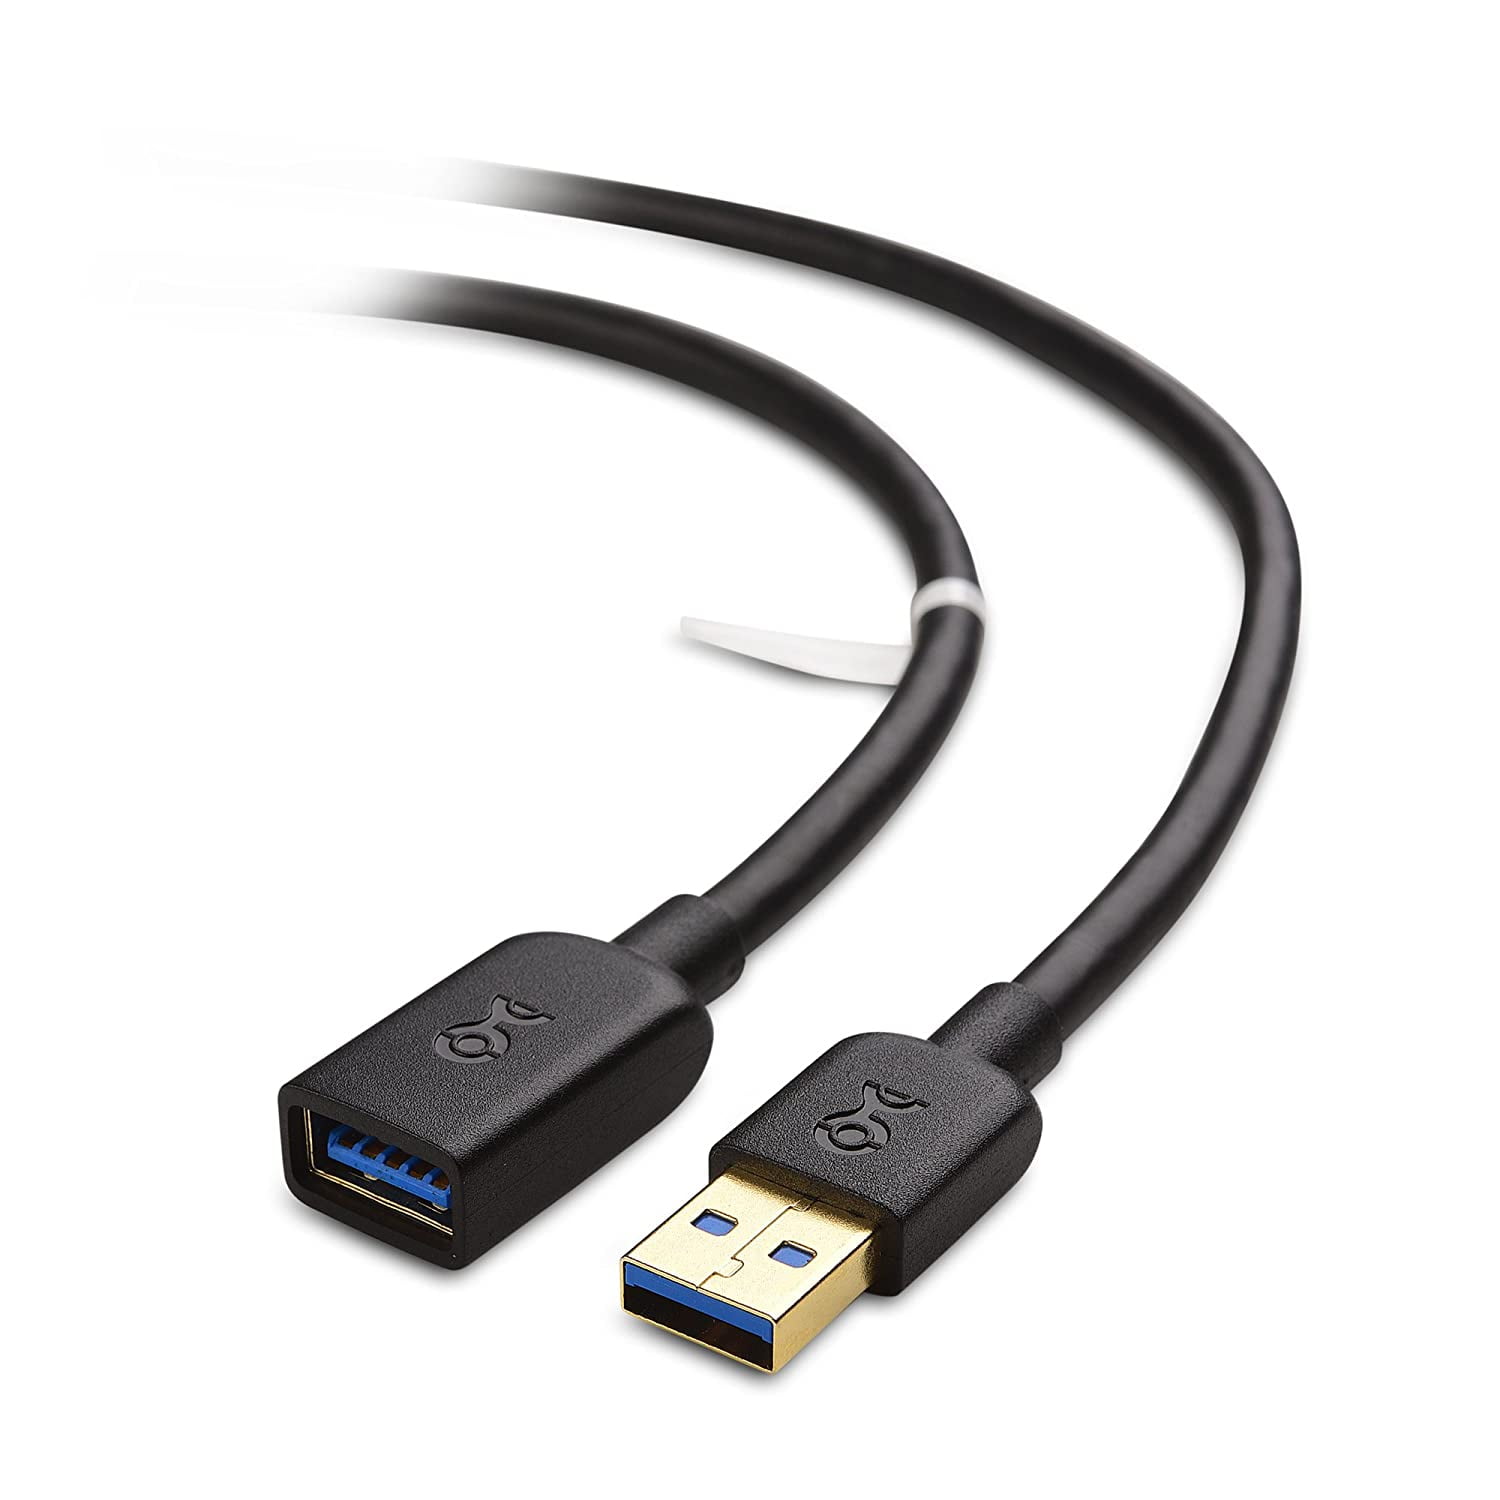 Cable Matters - Cable alargador USB a USB (cable de extensión USB 3.0),  color negro